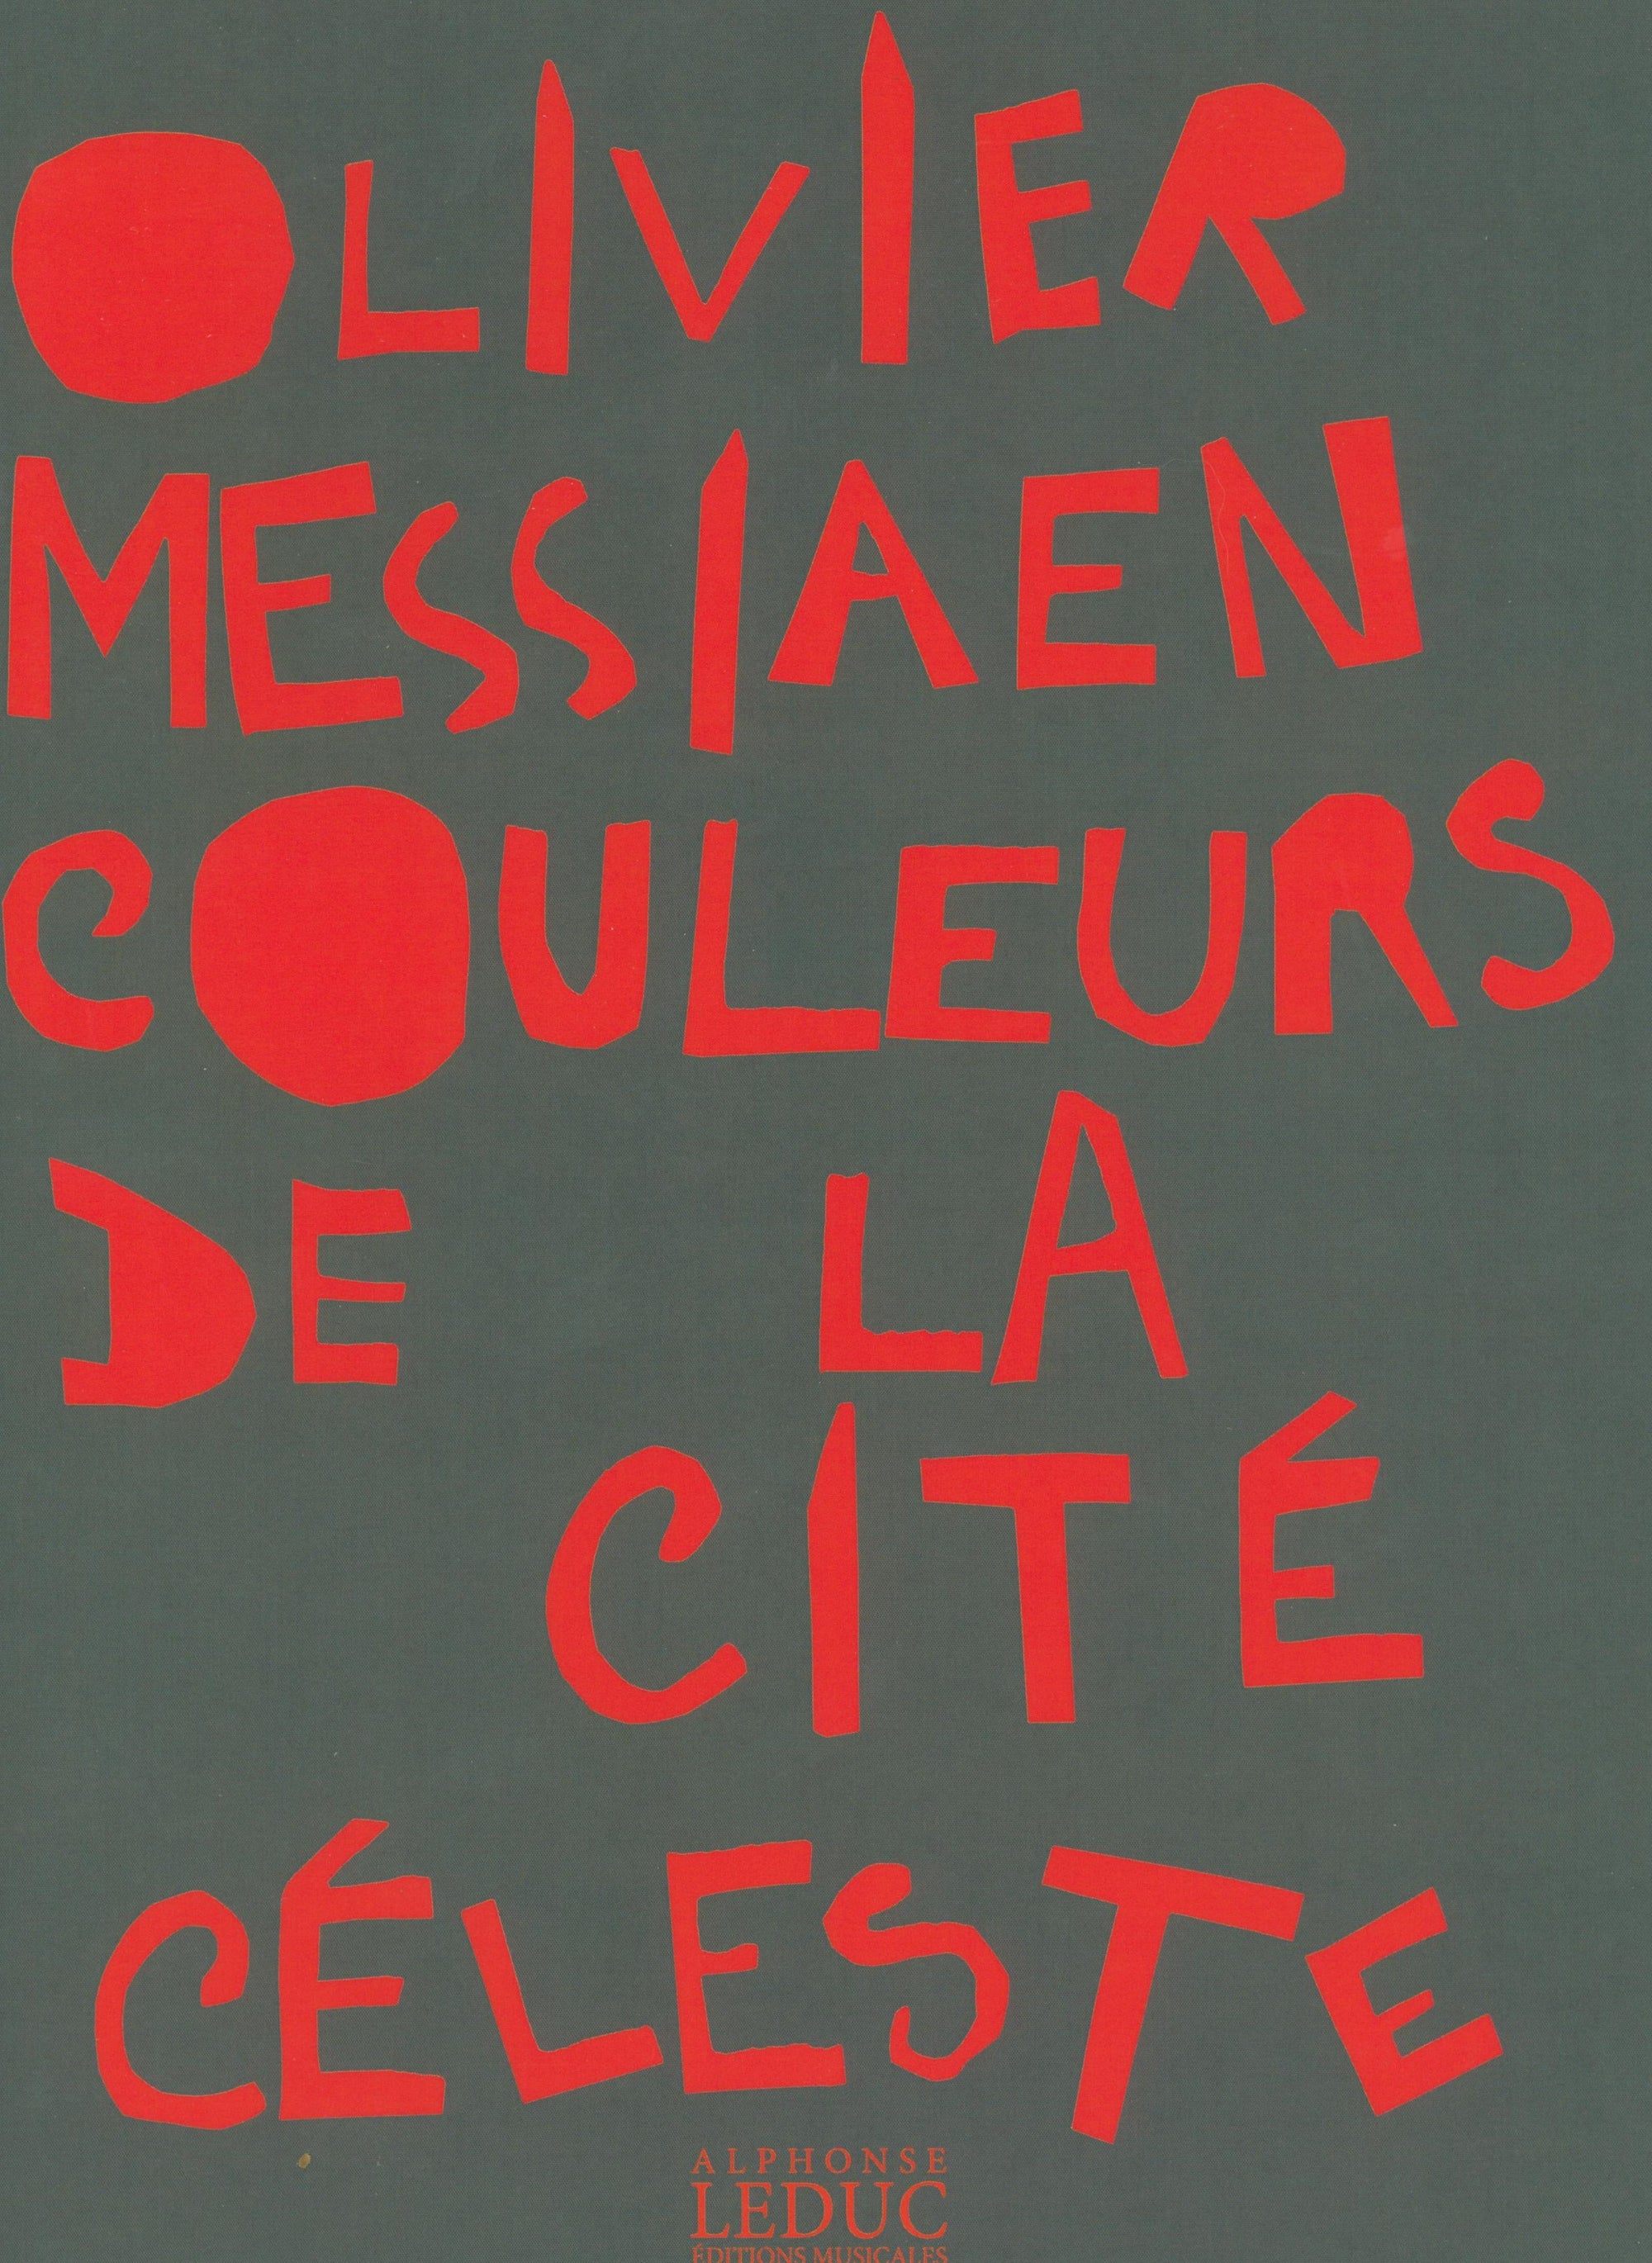 Messiaen: Couleurs de la Cité céleste